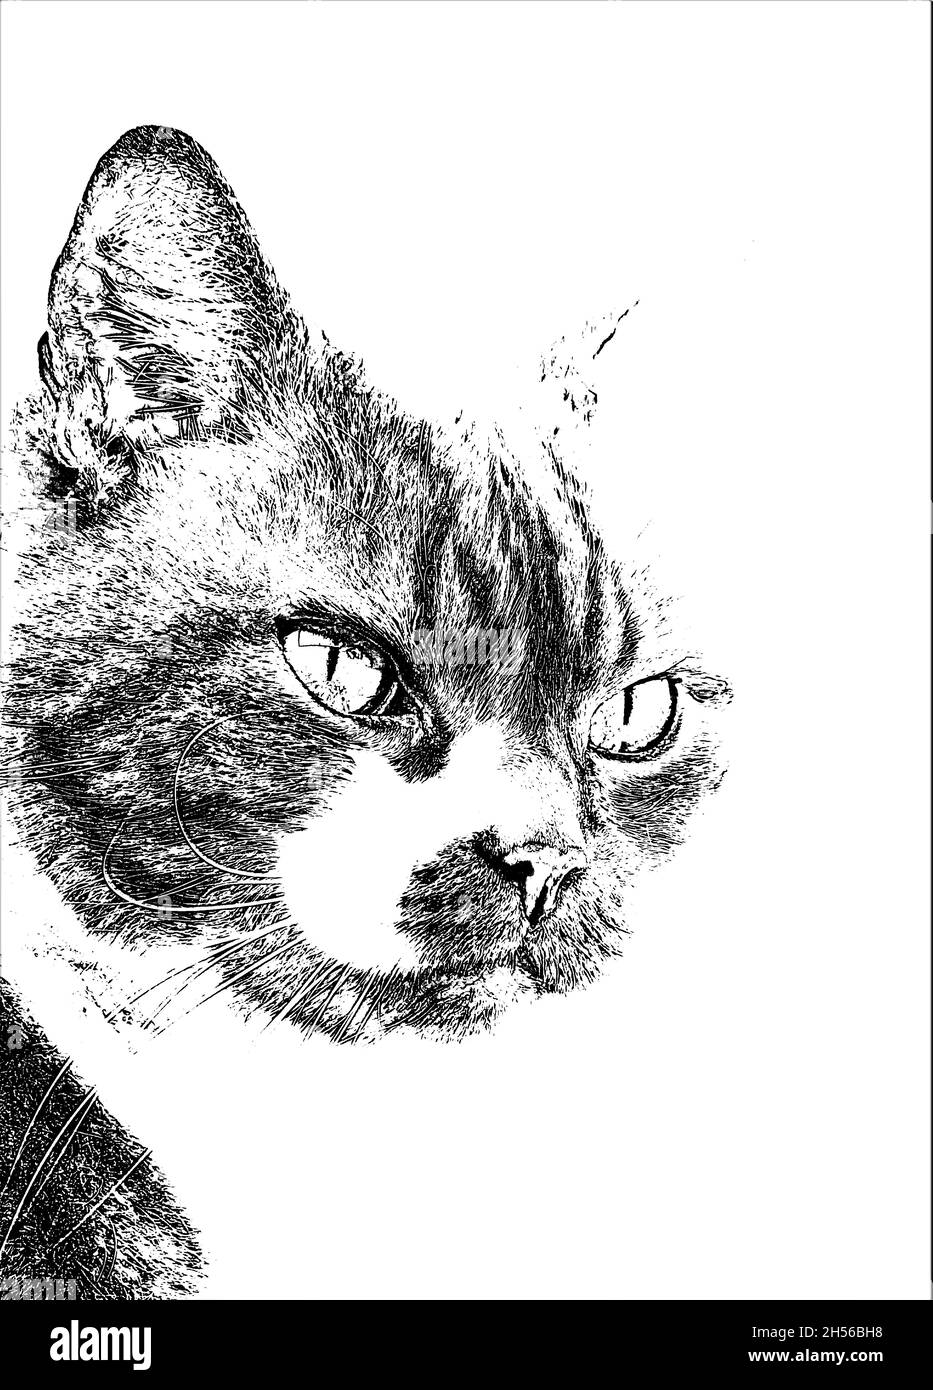 Portrait d'Arnie le chat monochrome Banque D'Images